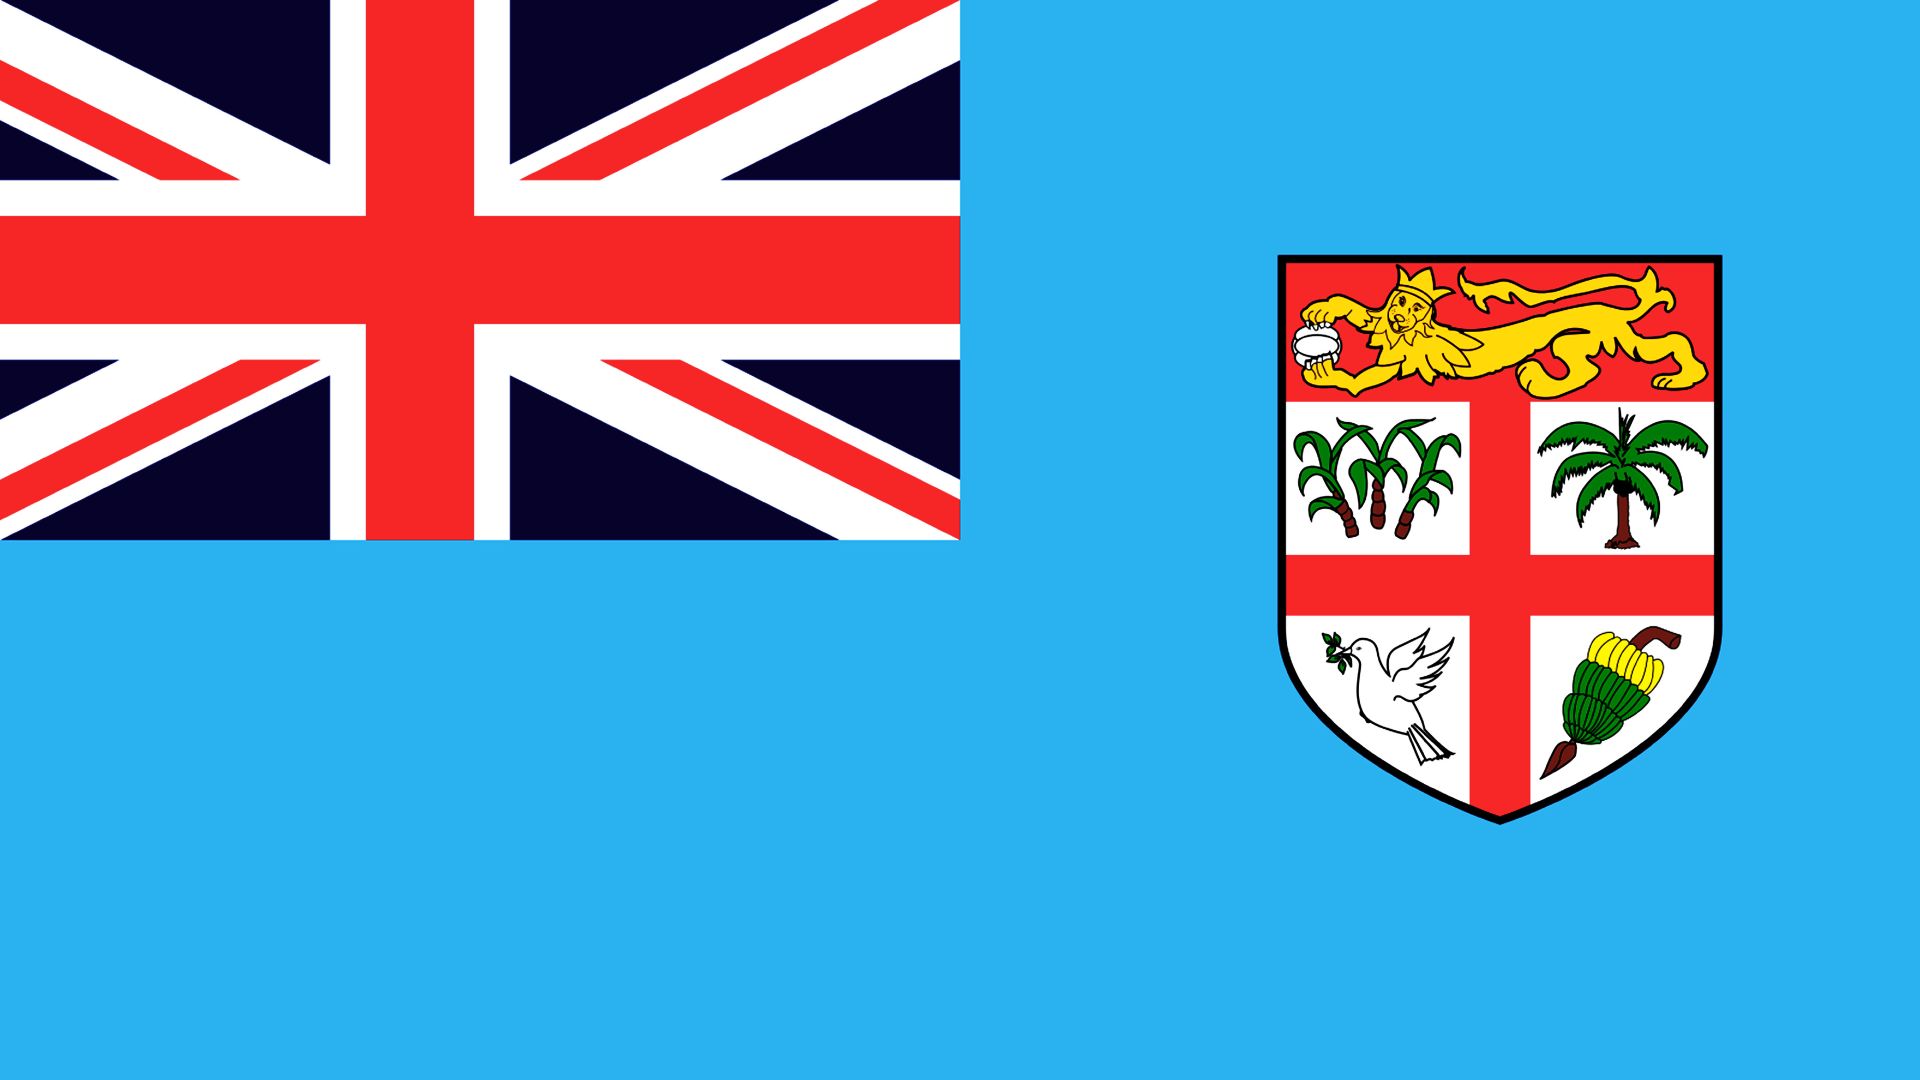 A bandeira das ilhas Fiji atual é similar à bandeira colonial usada antes da independência, as maiores diferenças são o uso, na versão atual, de um tom mais escuro de azul e apresentação do Brasão de Armas das ilhas Fiji por inteiro, e não apenas o escudo.